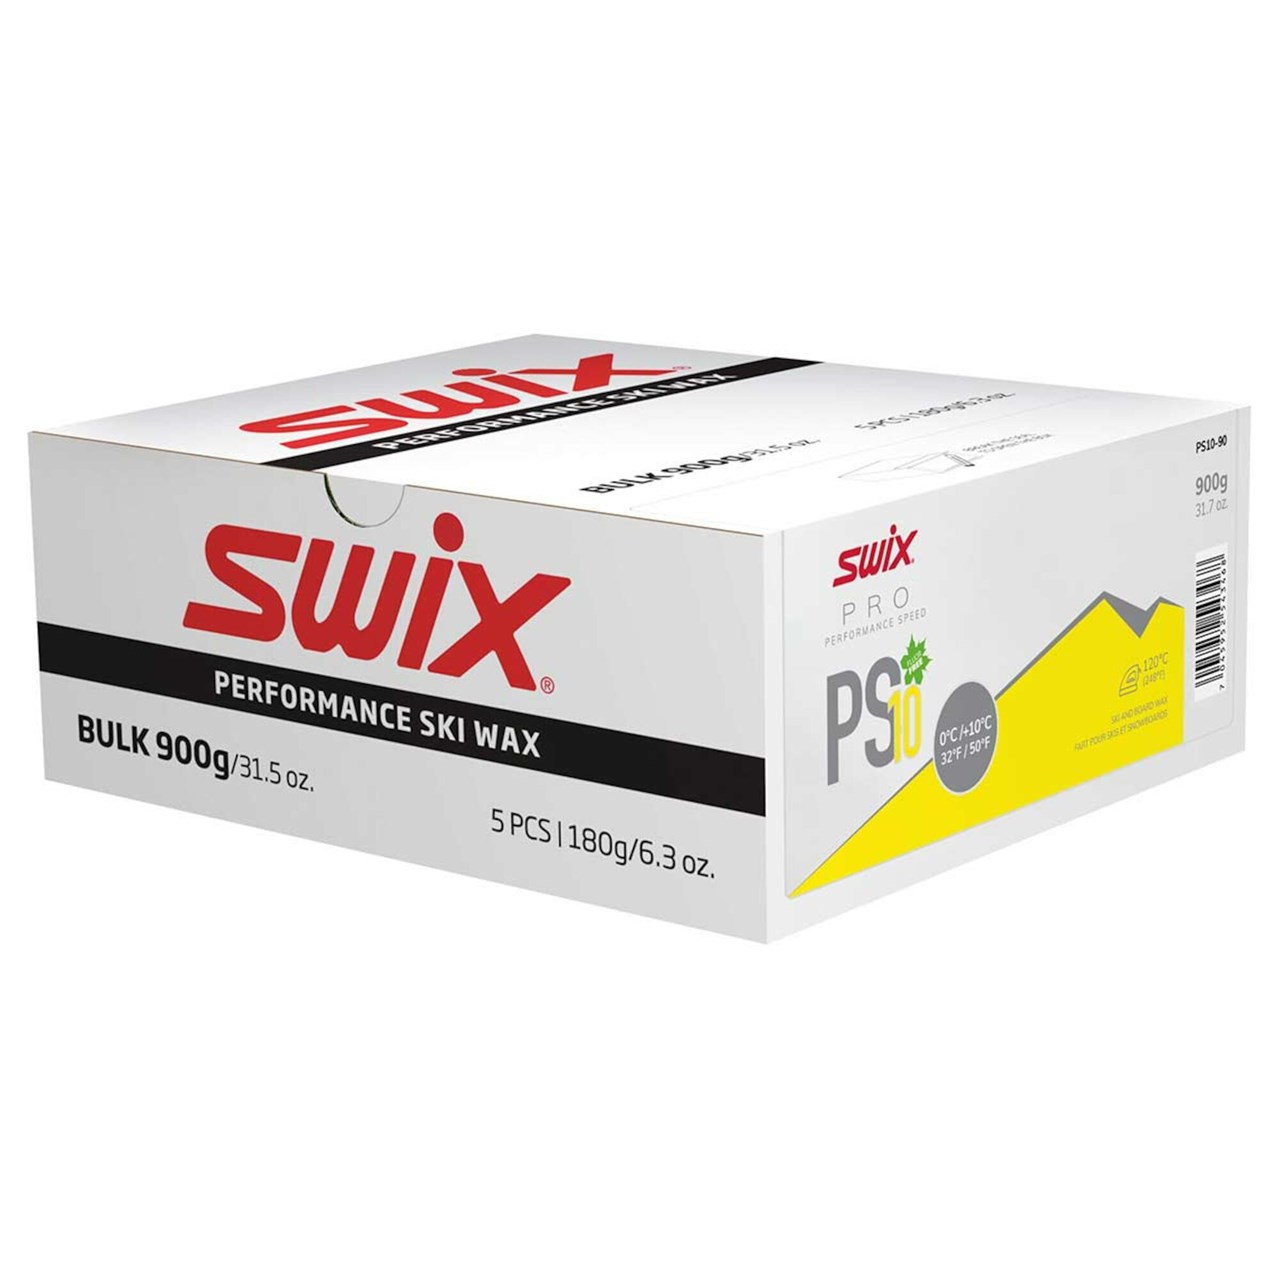 スウィックス SWIX PRO PERFORMANCE SPEED PS PS10イエロー 900g PS10-90 バルク 大容量